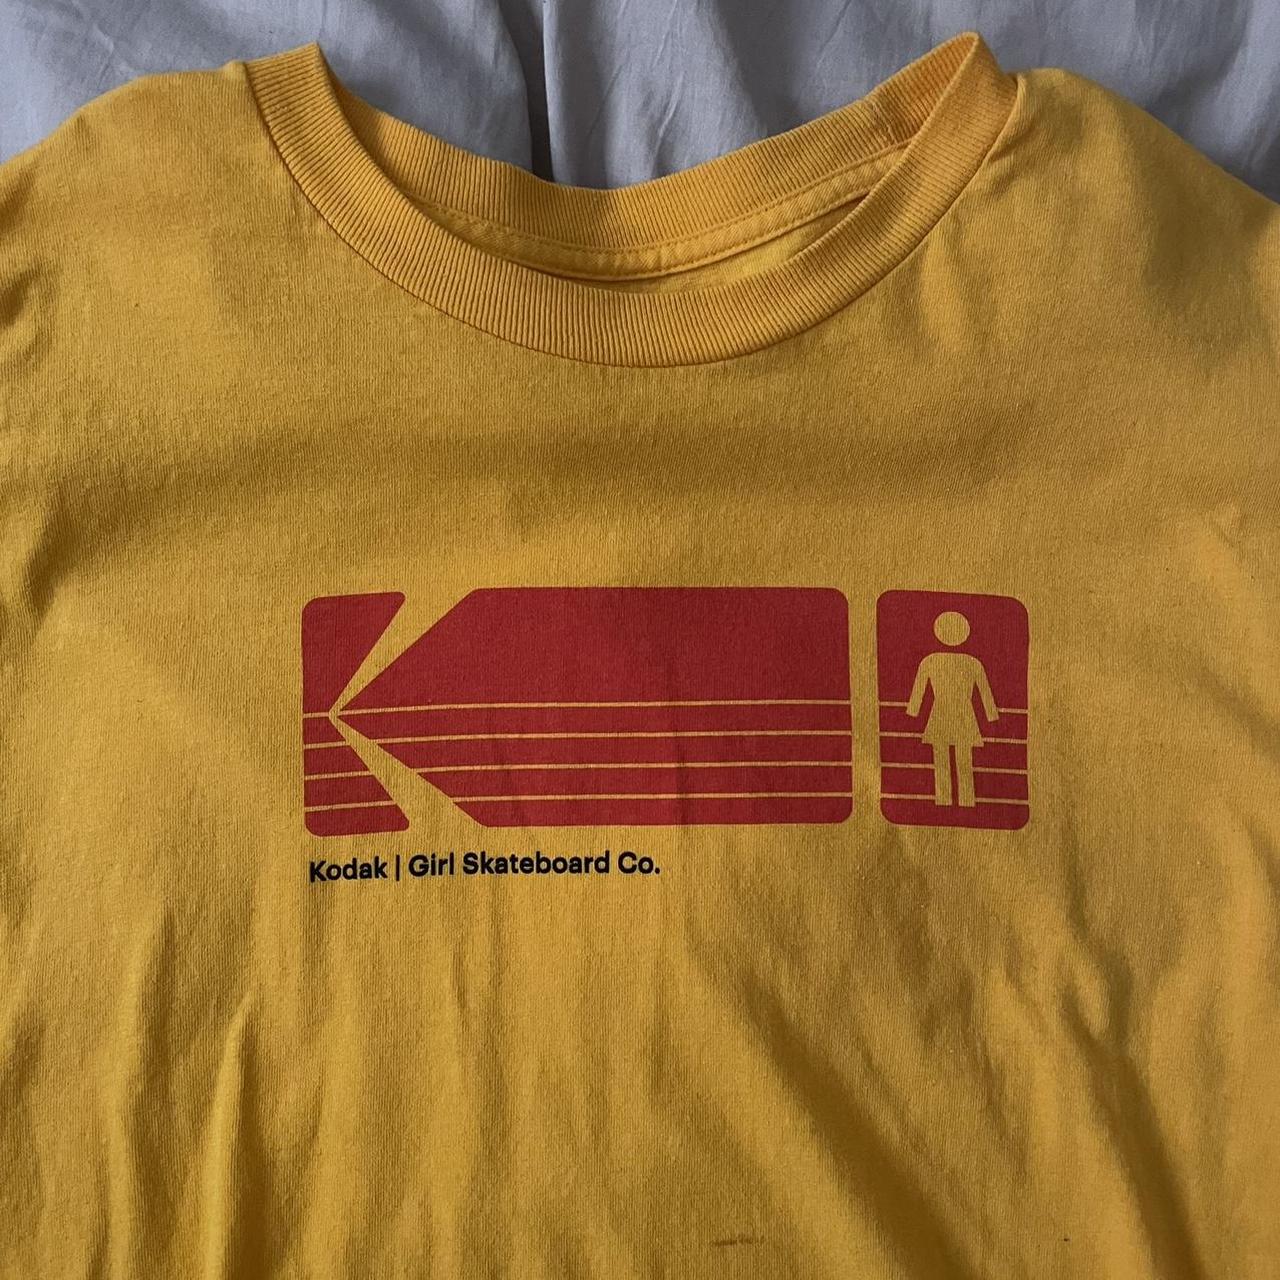 Kodak Men's Yellow and Red T-shirt